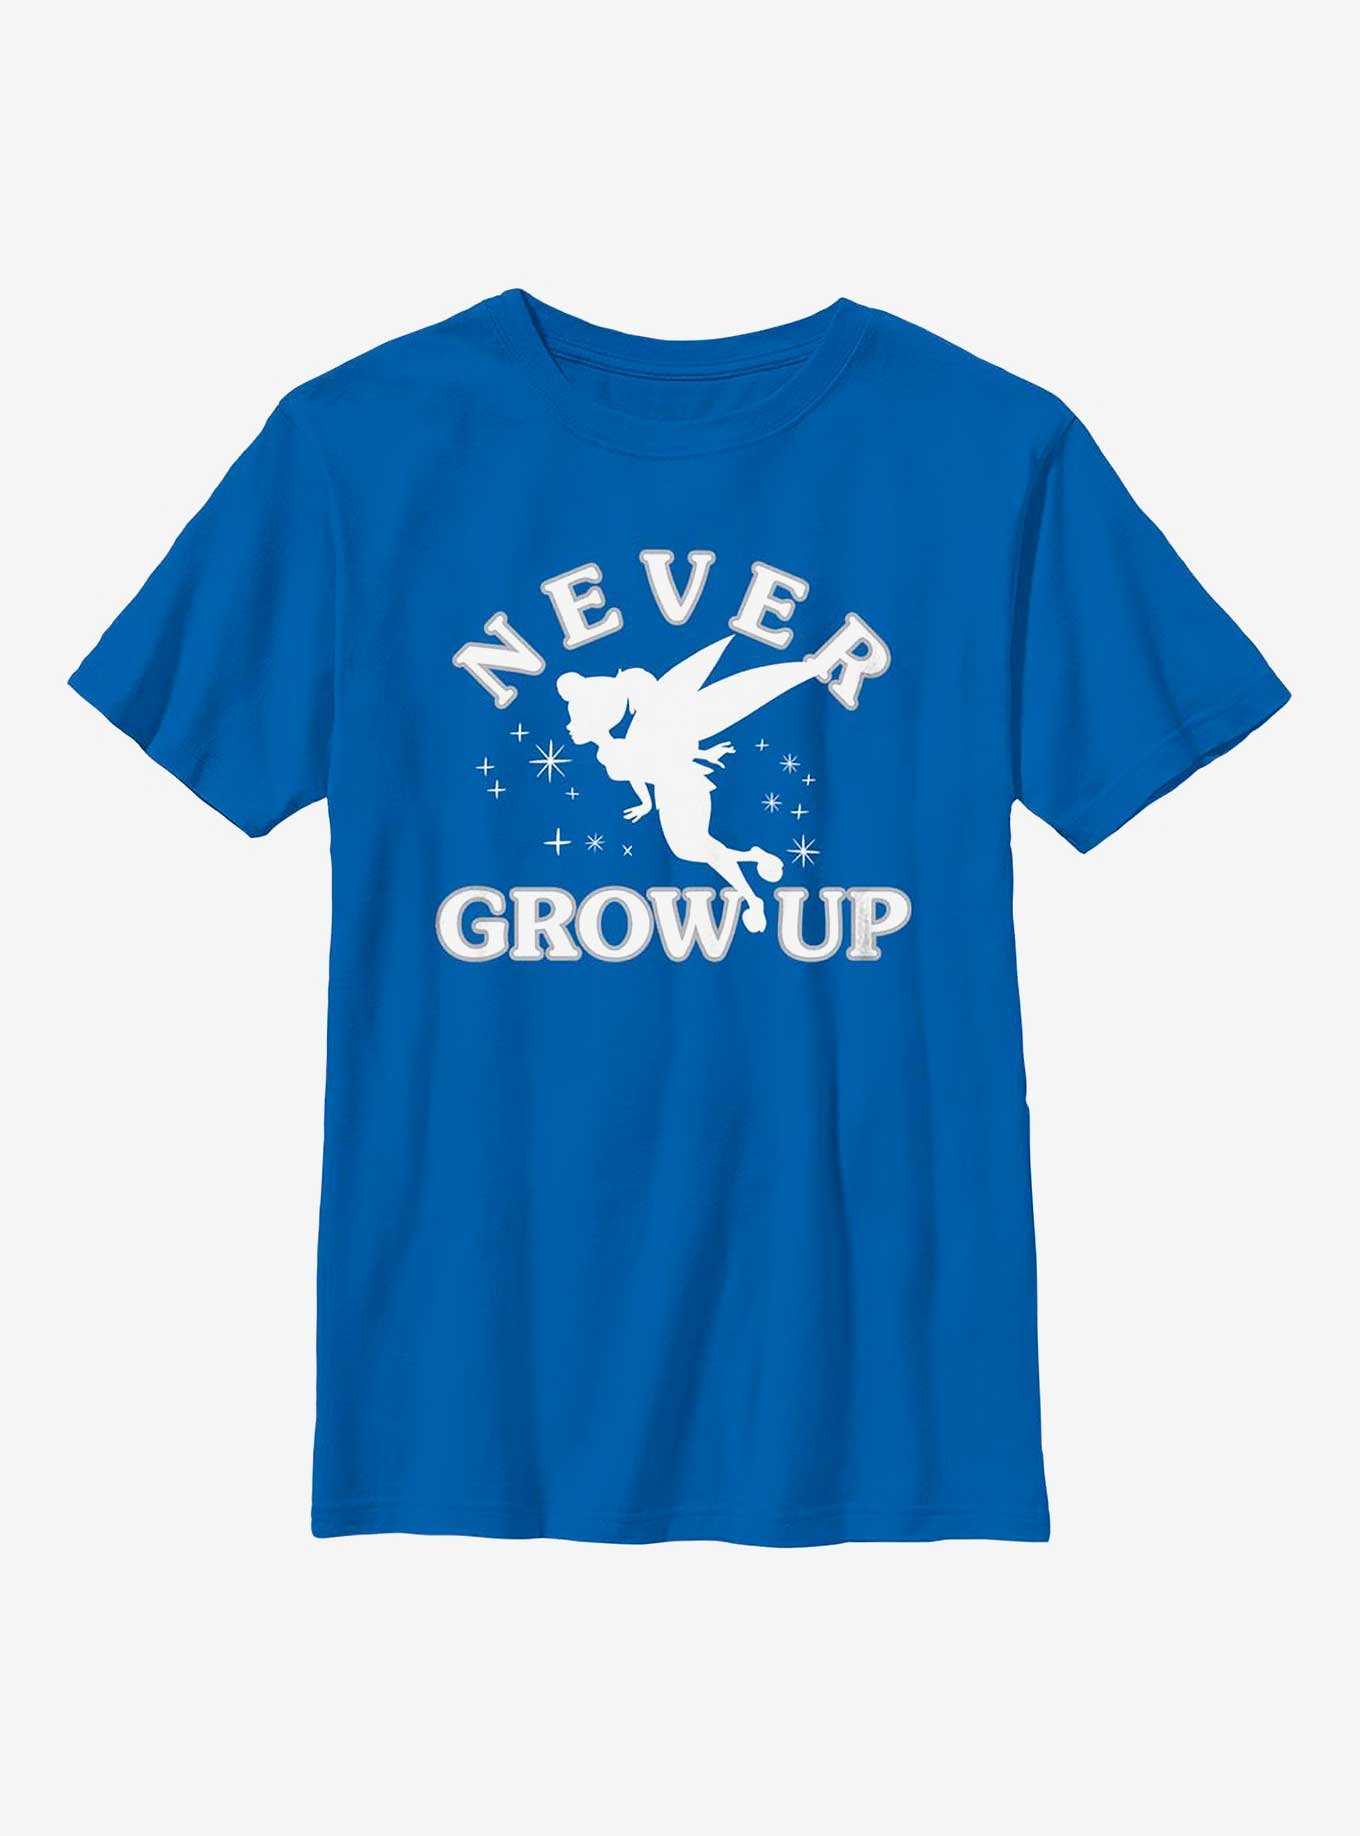 Disney Peter Pan Never Grow Up Youth T-Shirt, , hi-res